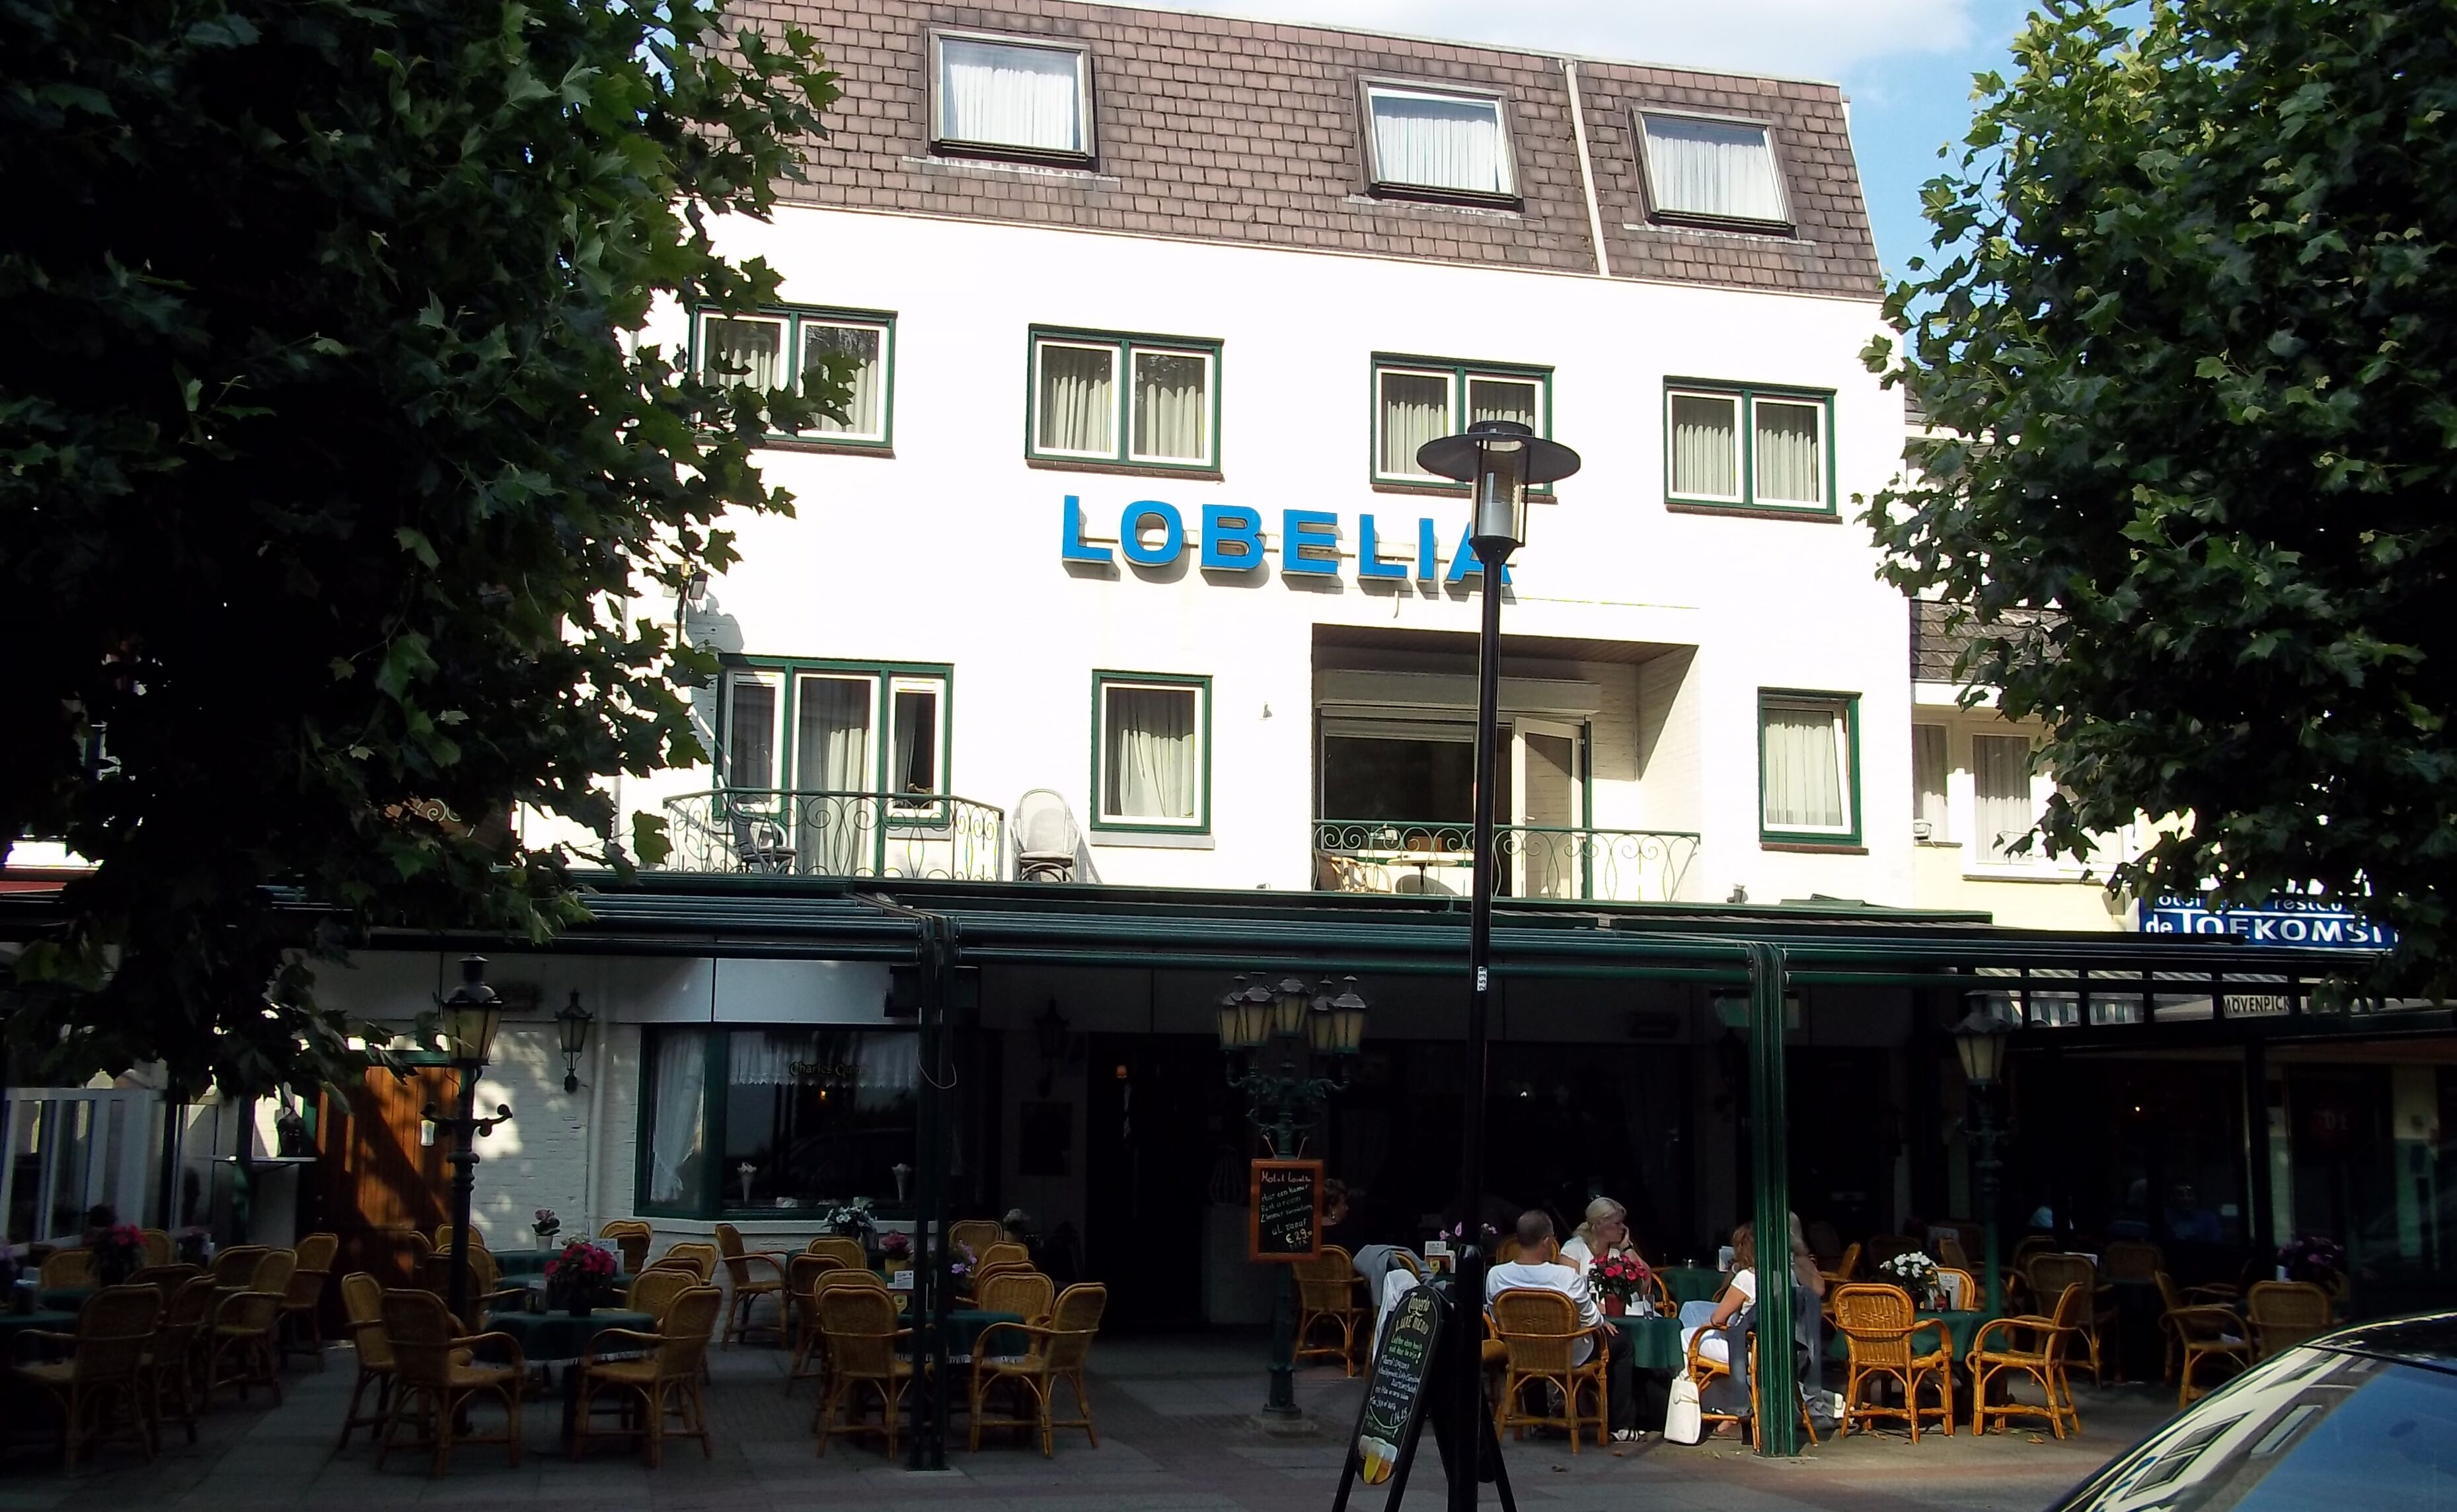 De Heren Van Valkenburg (vh. Hotel Lobelia)